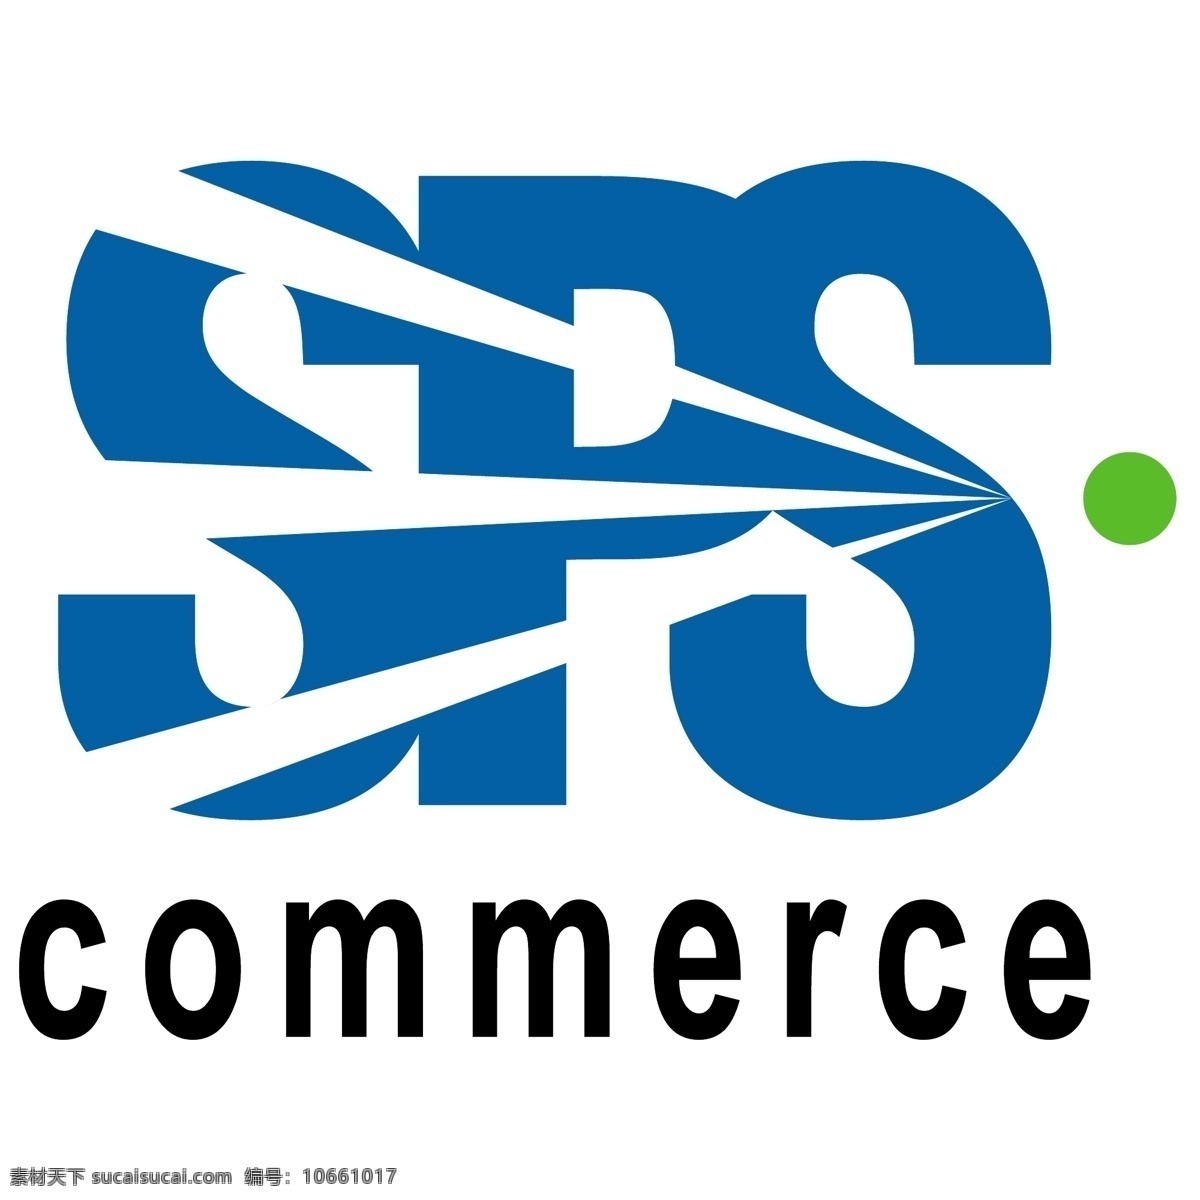 sps commerce 矢量标志下载 免费矢量标识 商标 品牌标识 标识 矢量 免费 品牌 公司 白色